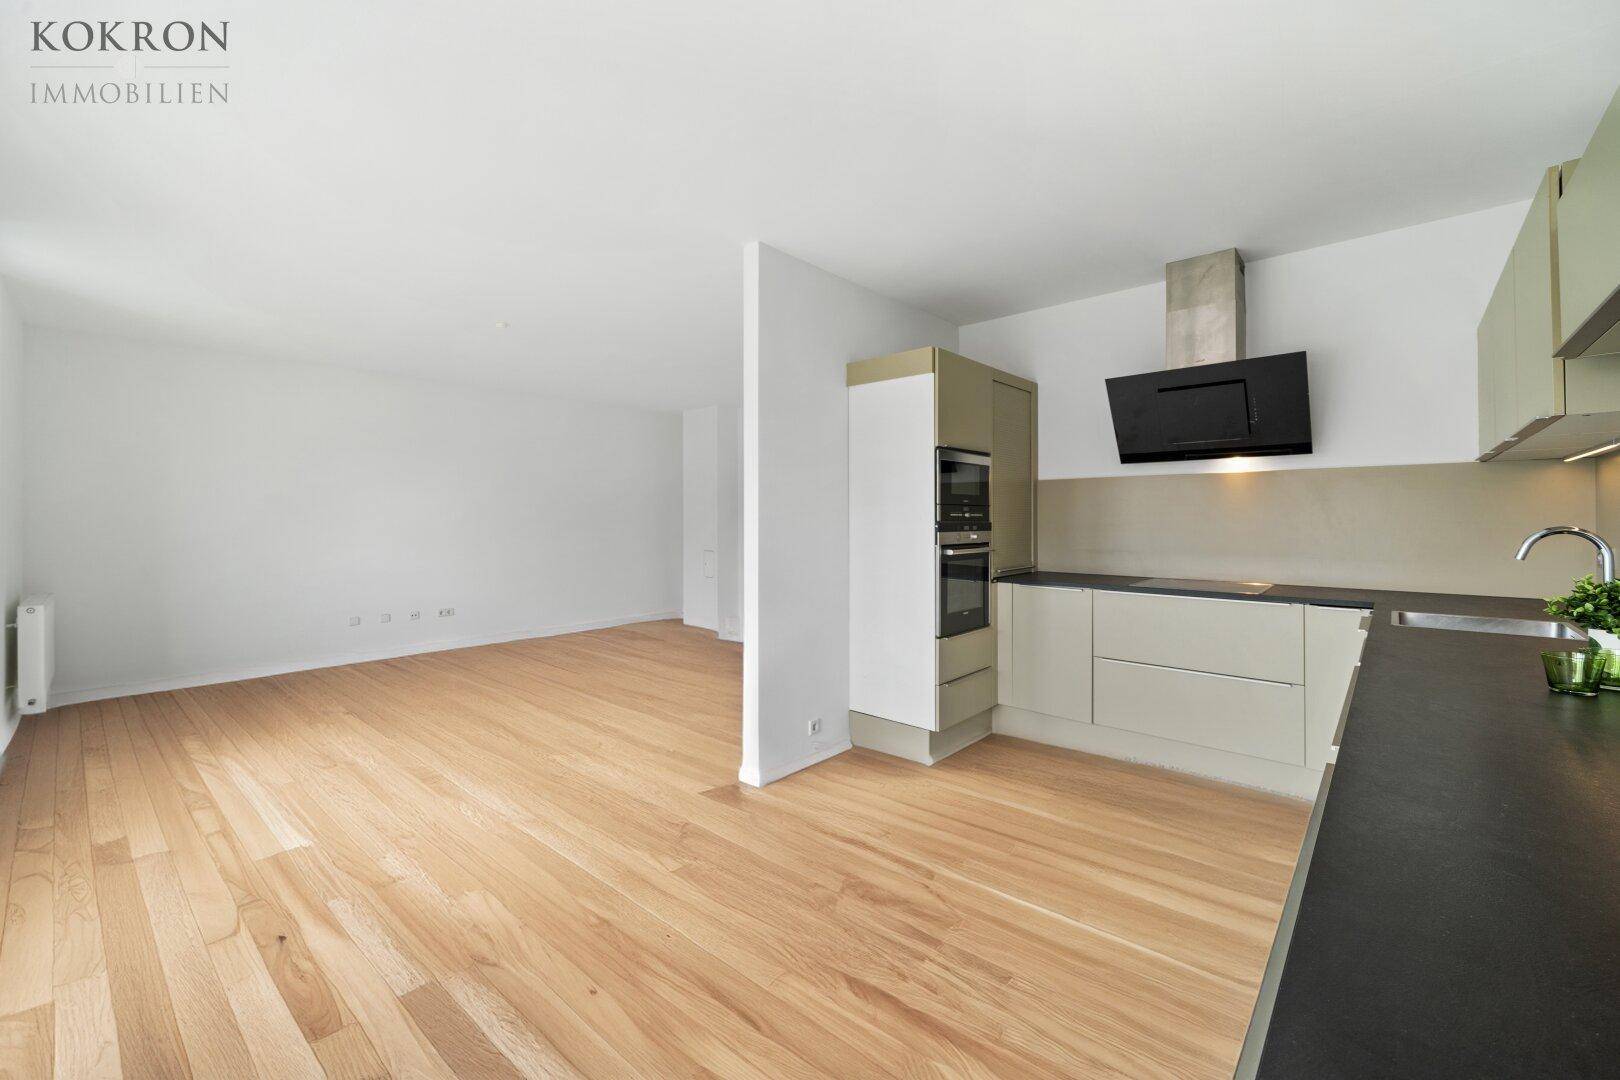 Wohnraum / Küchenbereich: Parkett virtuell verlegt